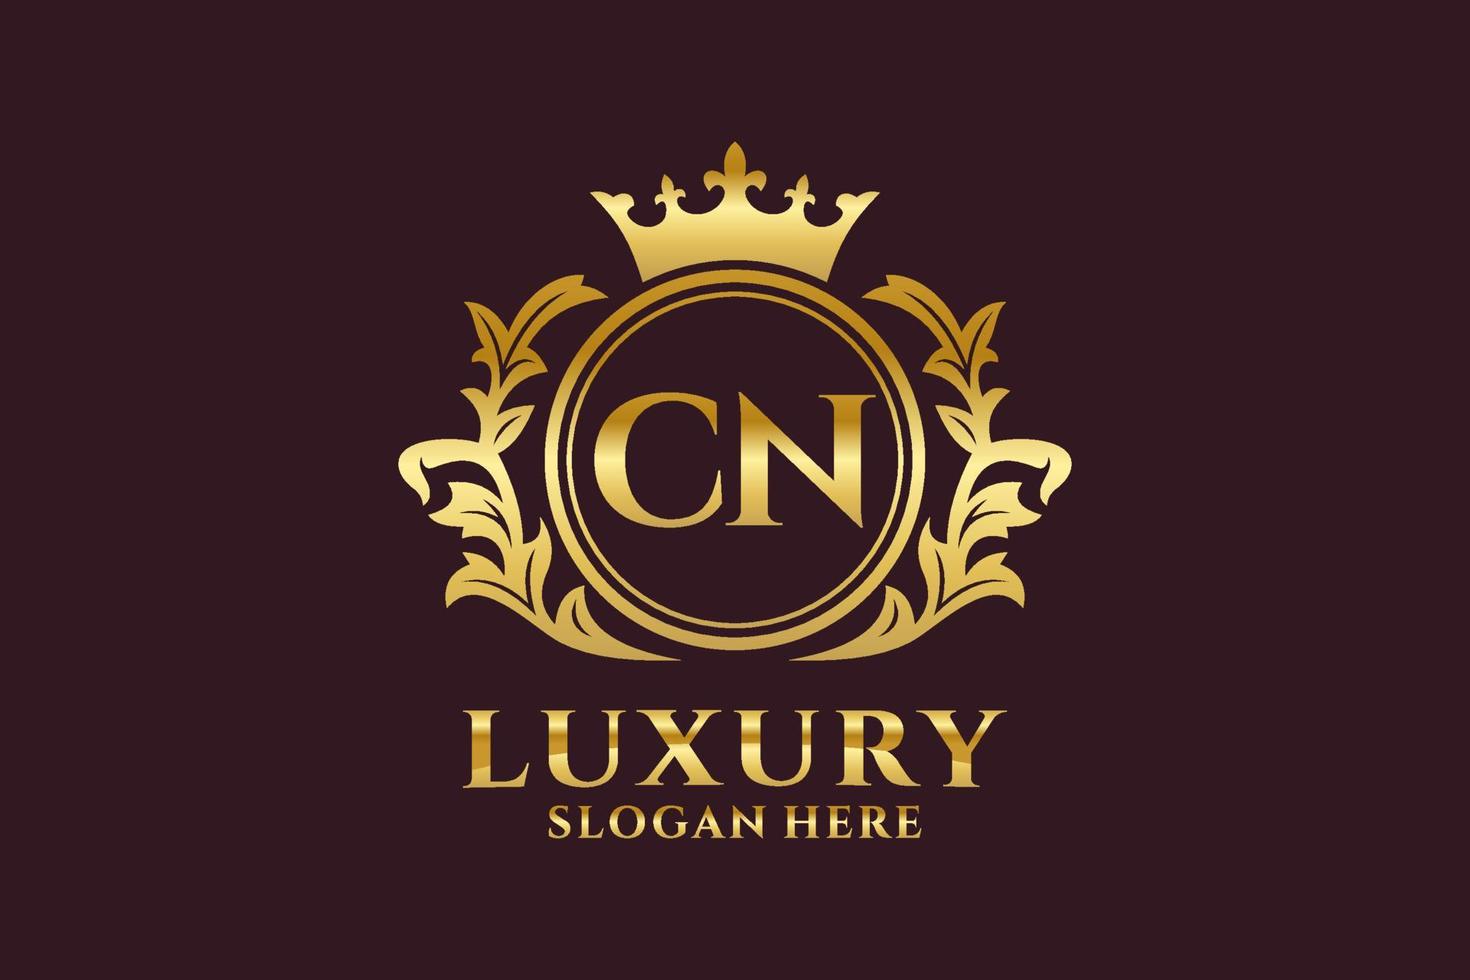 eerste cn brief Koninklijk luxe logo sjabloon in vector kunst voor luxueus branding projecten en andere vector illustratie.